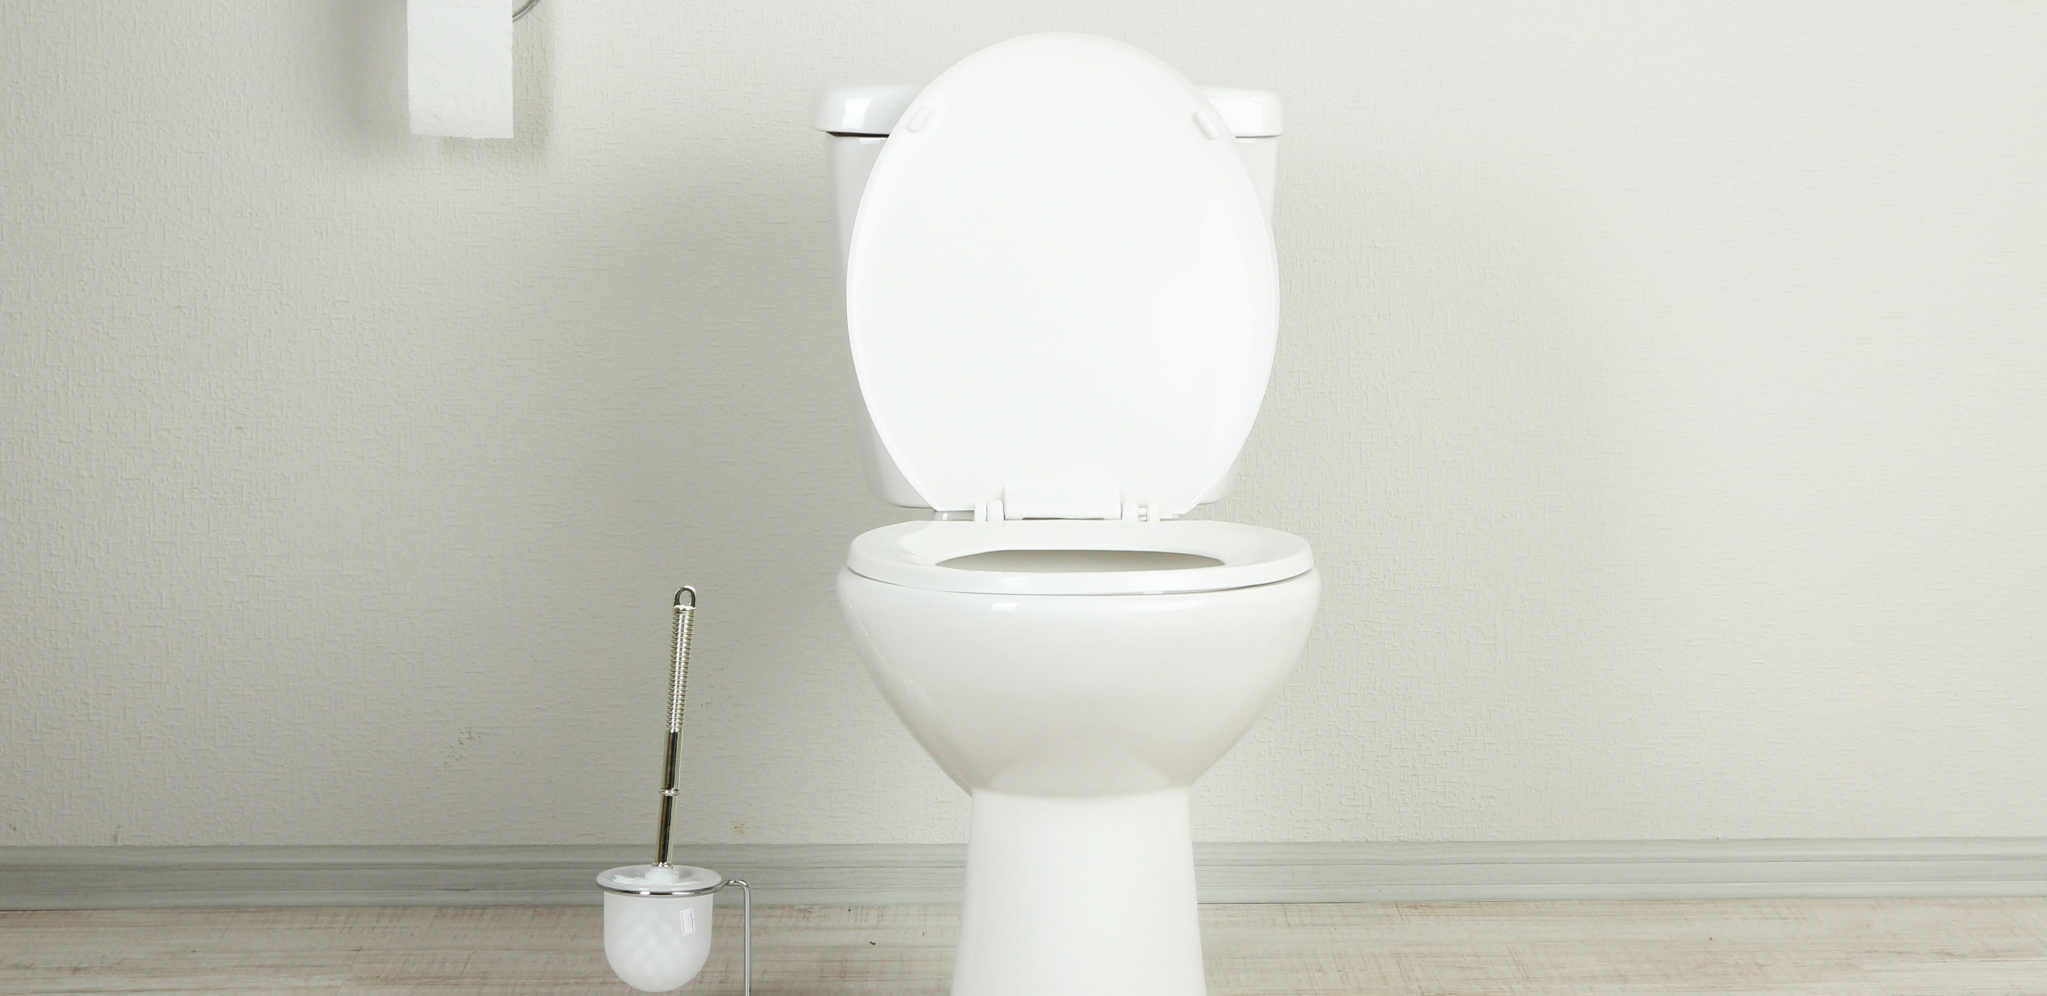 FUJČINA Žene rođene u ovim horoskopskim znakovima retko koriste WC četku, ostavljaju prljav toalet na poslu i u kafiću